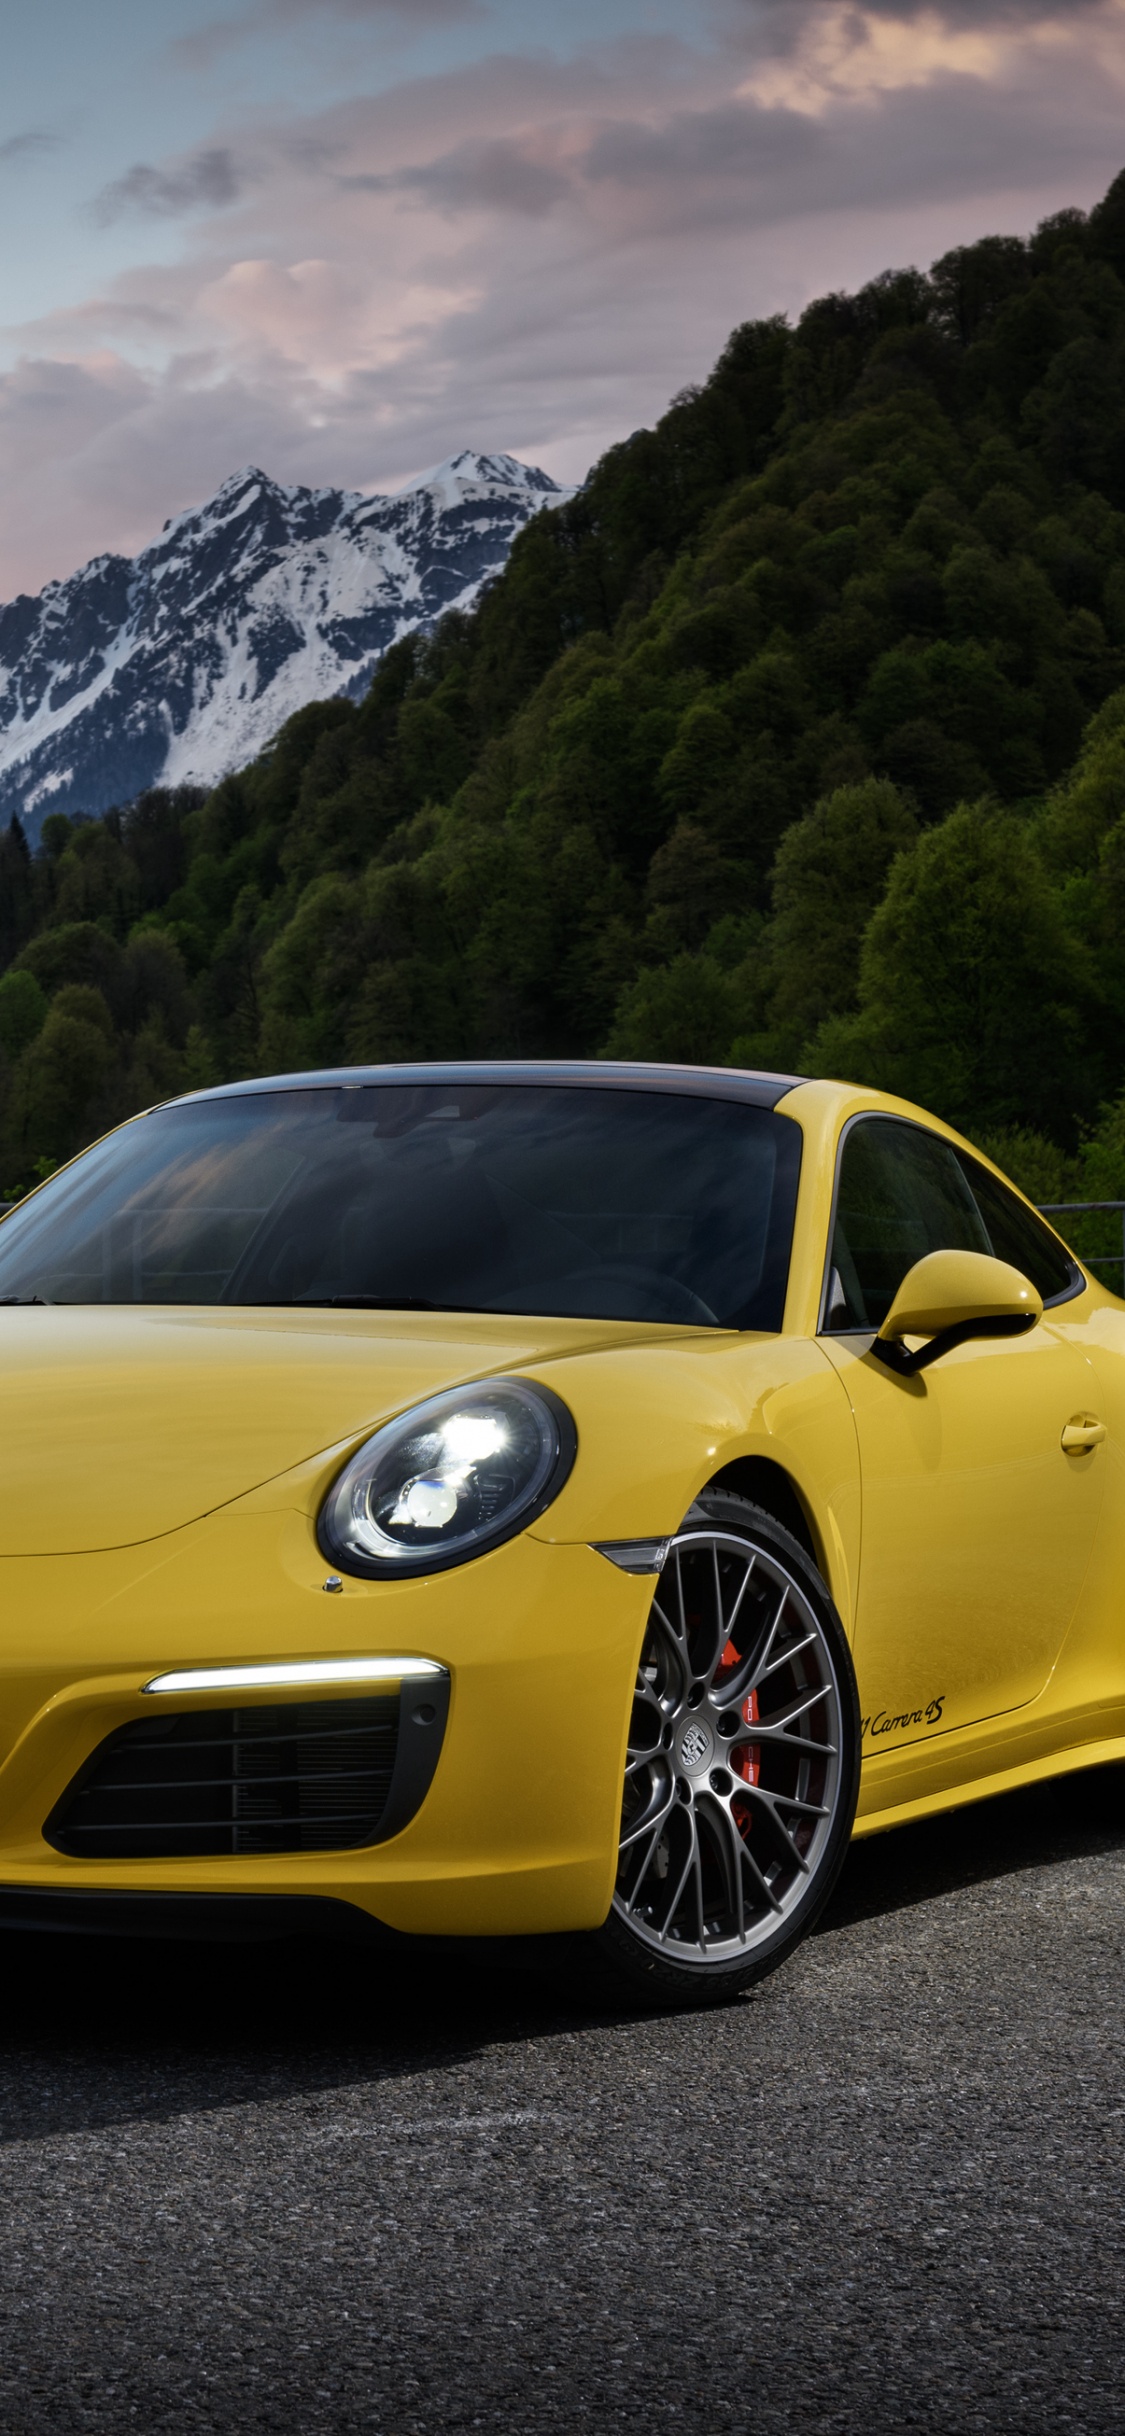 Gelber Porsche 911 Auf Der Straße in Der Nähe Des Berges Tagsüber. Wallpaper in 1125x2436 Resolution